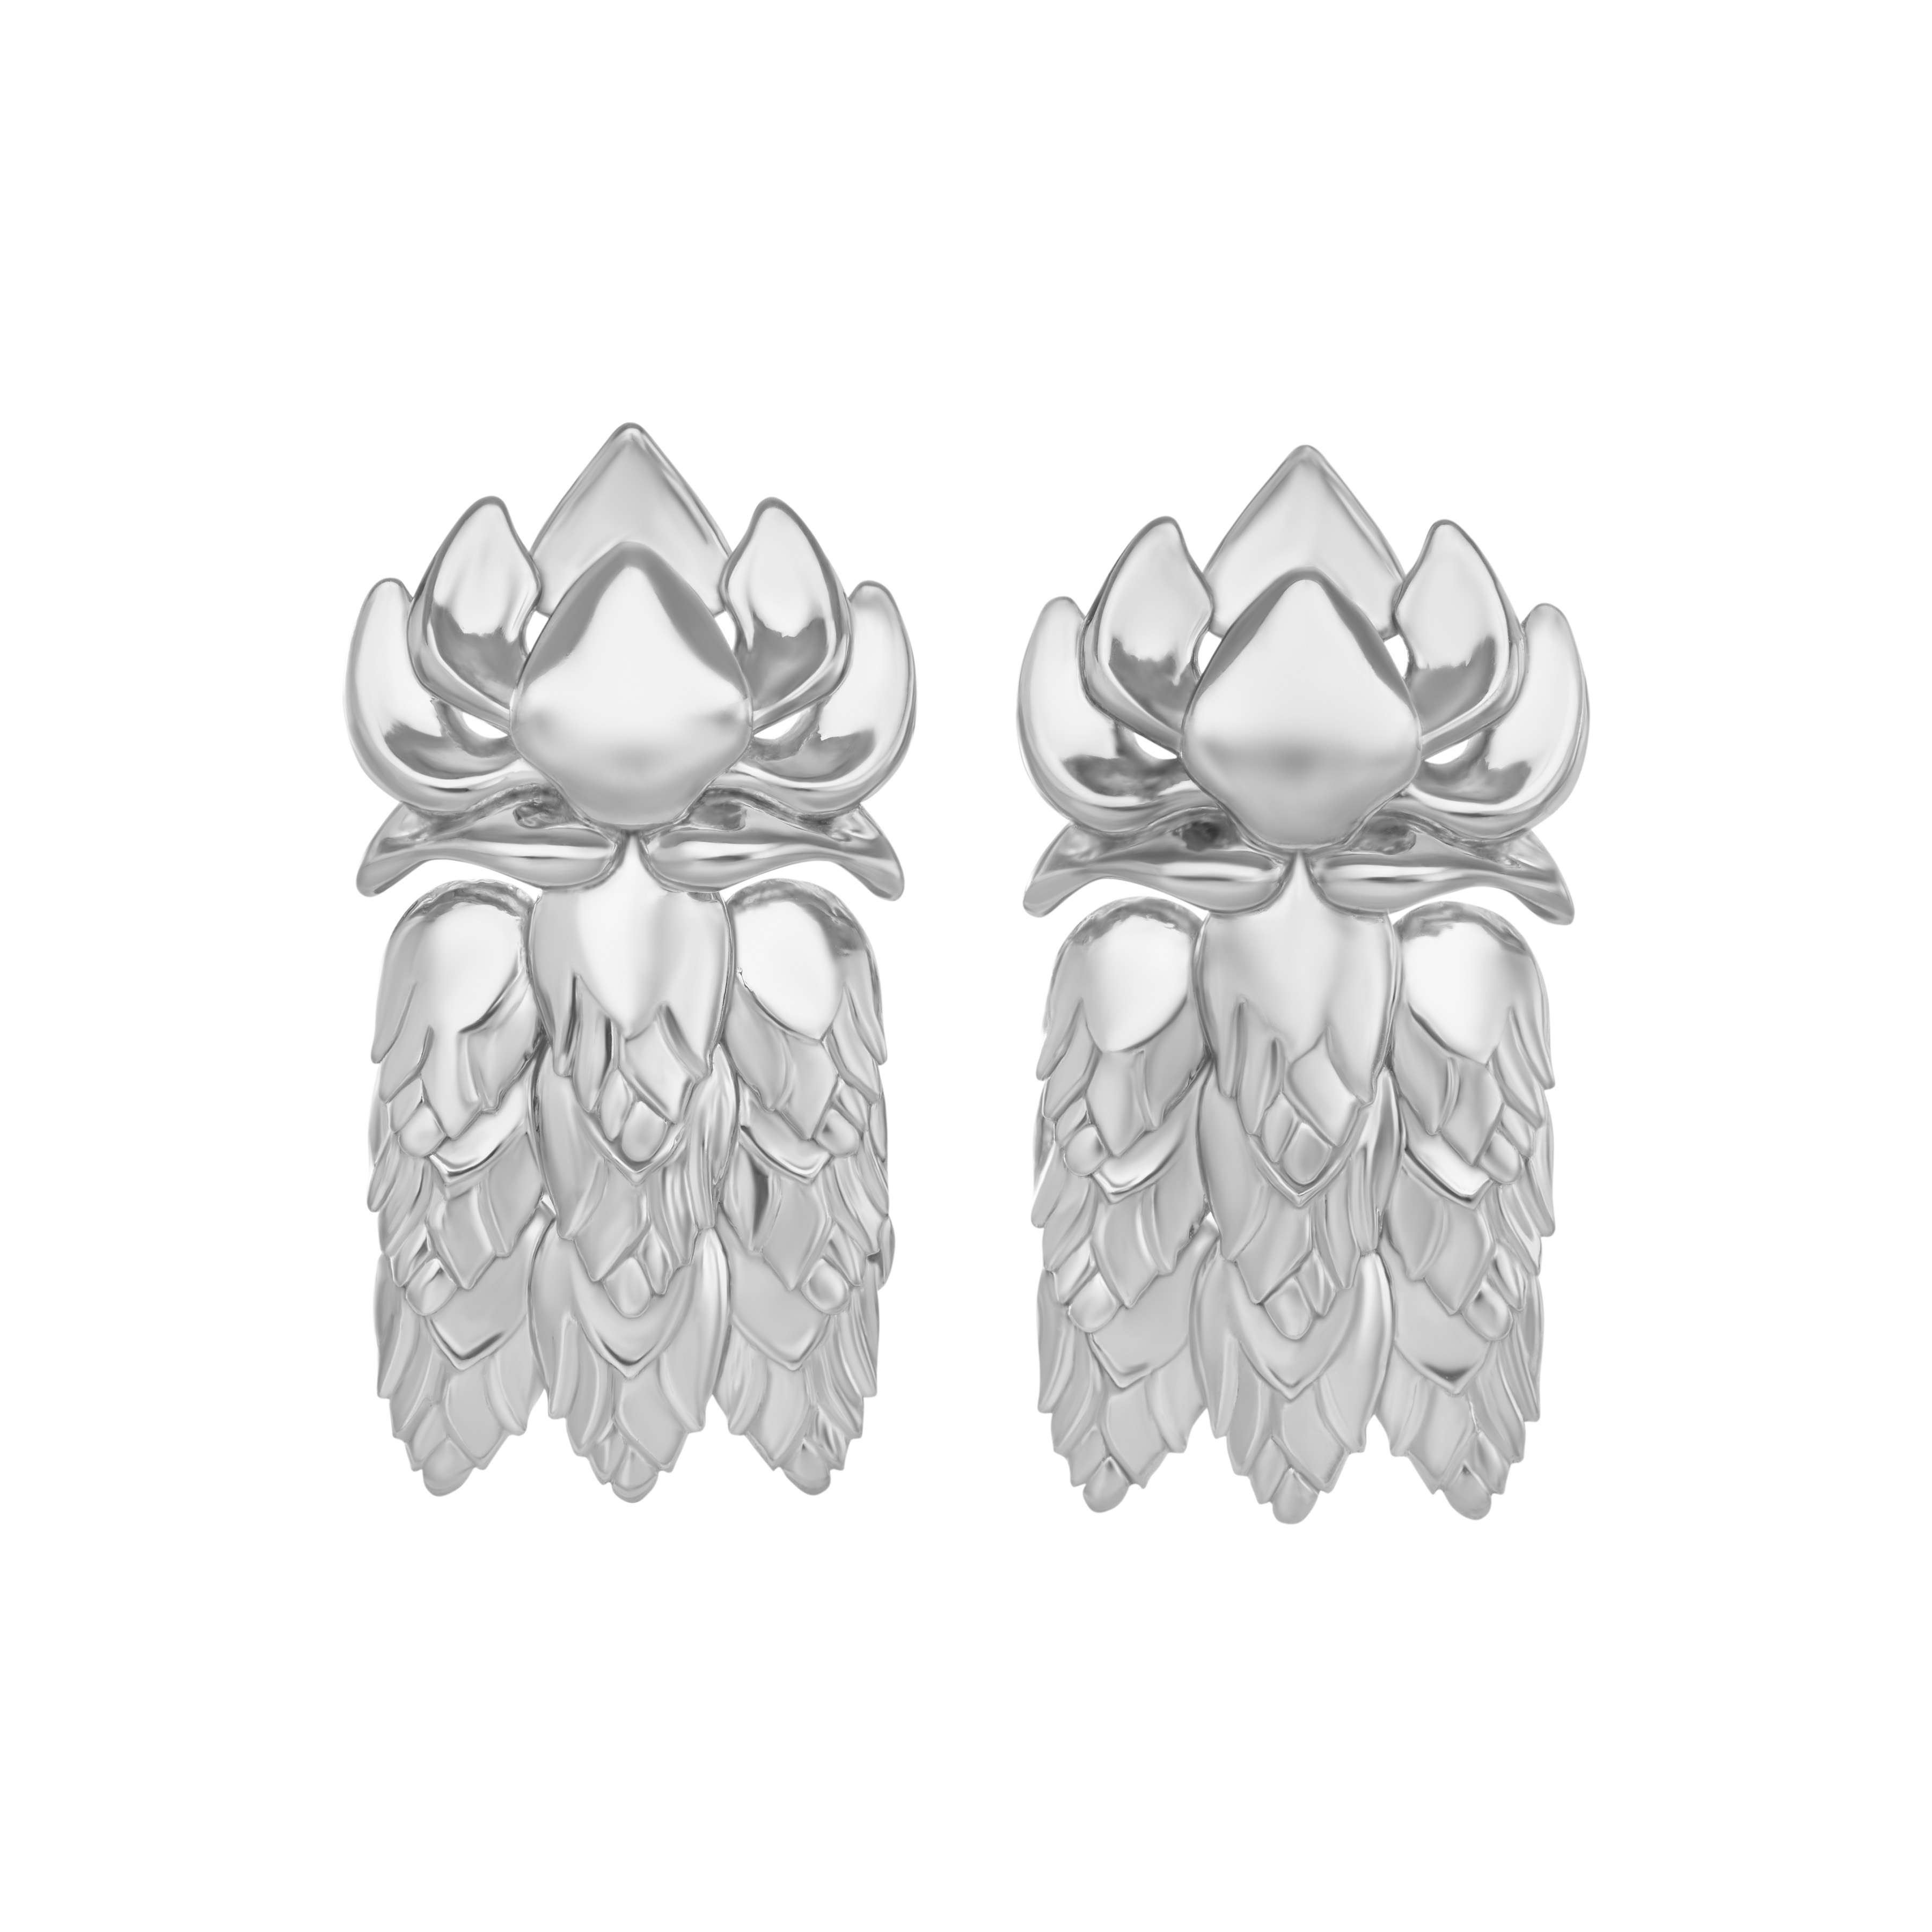 Phkachhouck 2.0 Earrings in 925 Sterling Silver, Image Courtesy of EdoEyen